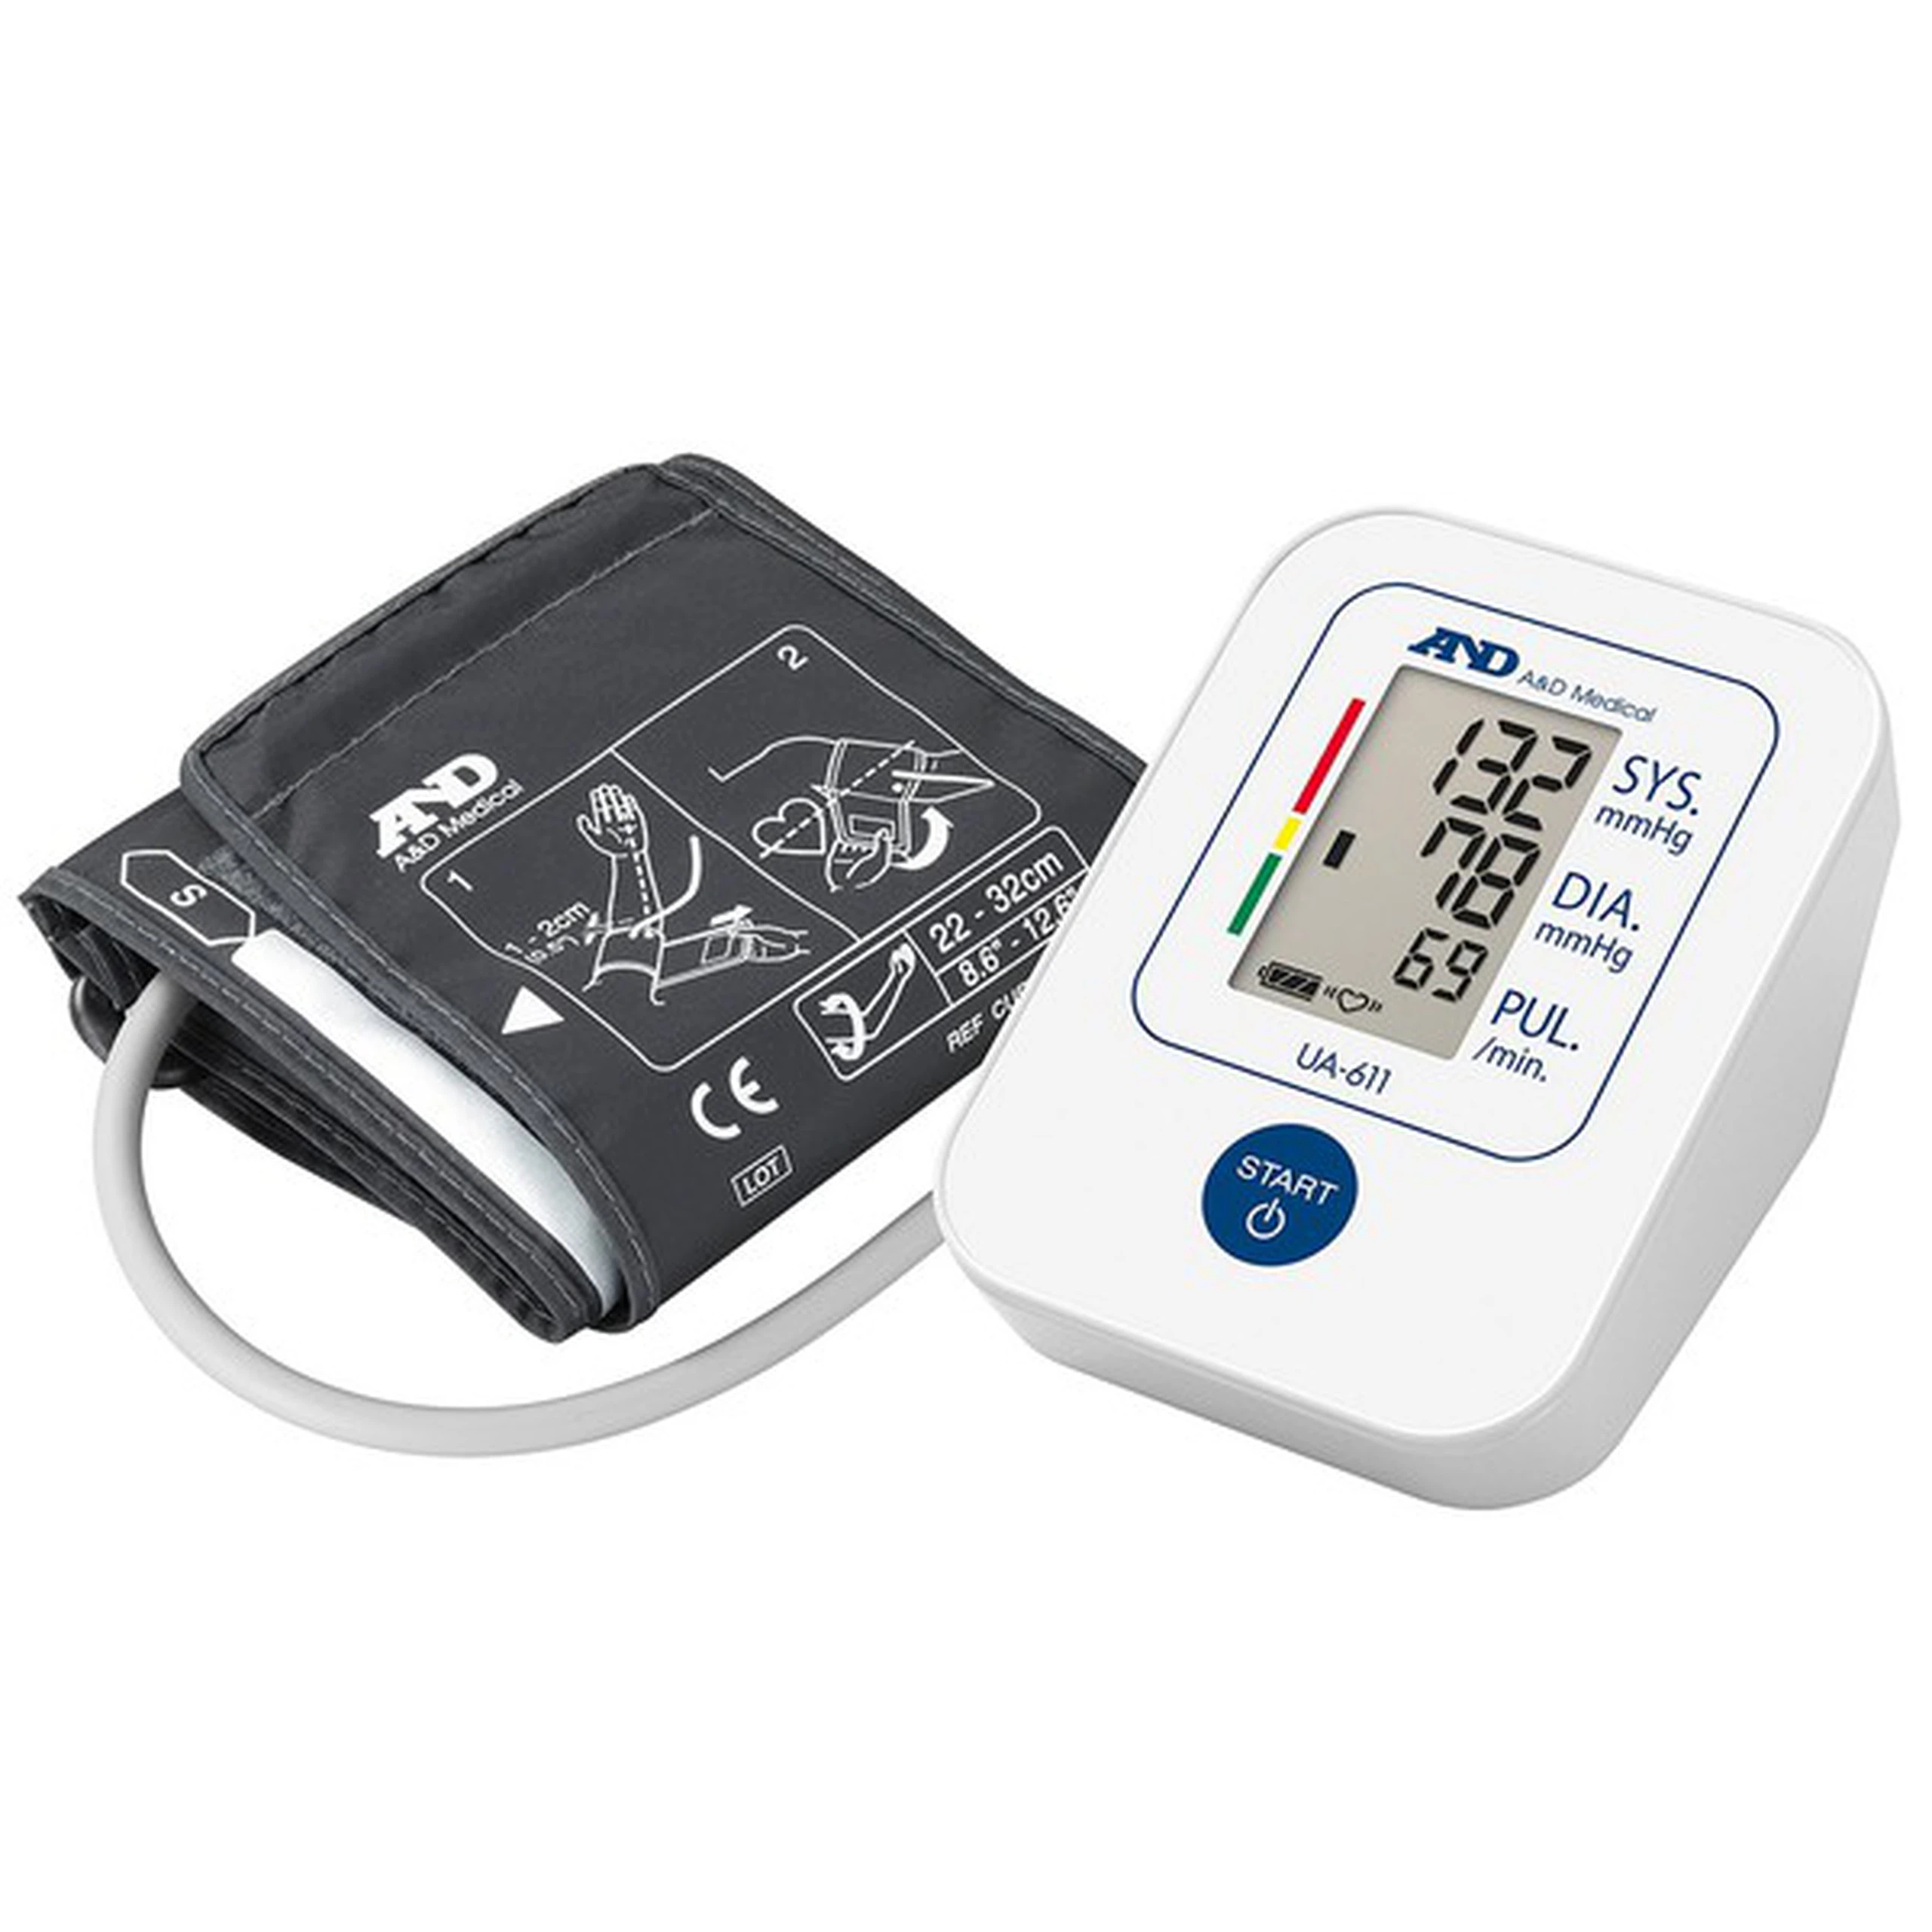 Máy đo huyết áp bắp tay tự động AND UA-611 hỗ trợ đo huyết áp và nhịp tim